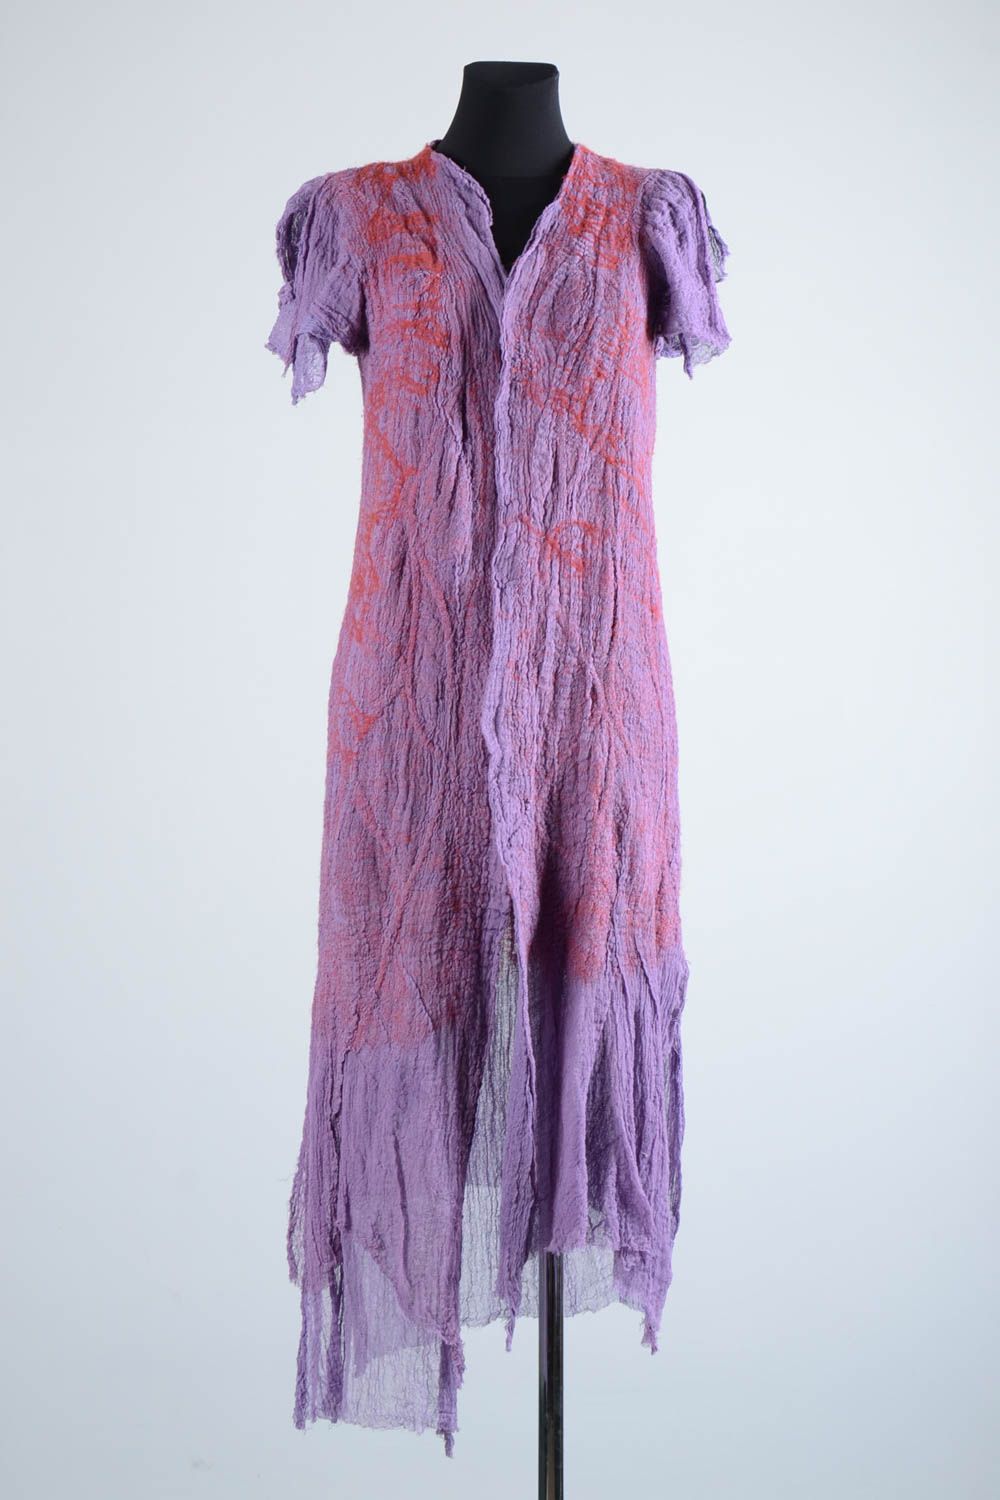 Manteau été femme fait main Manteau laine violet manches courtes Vêtement femme photo 1